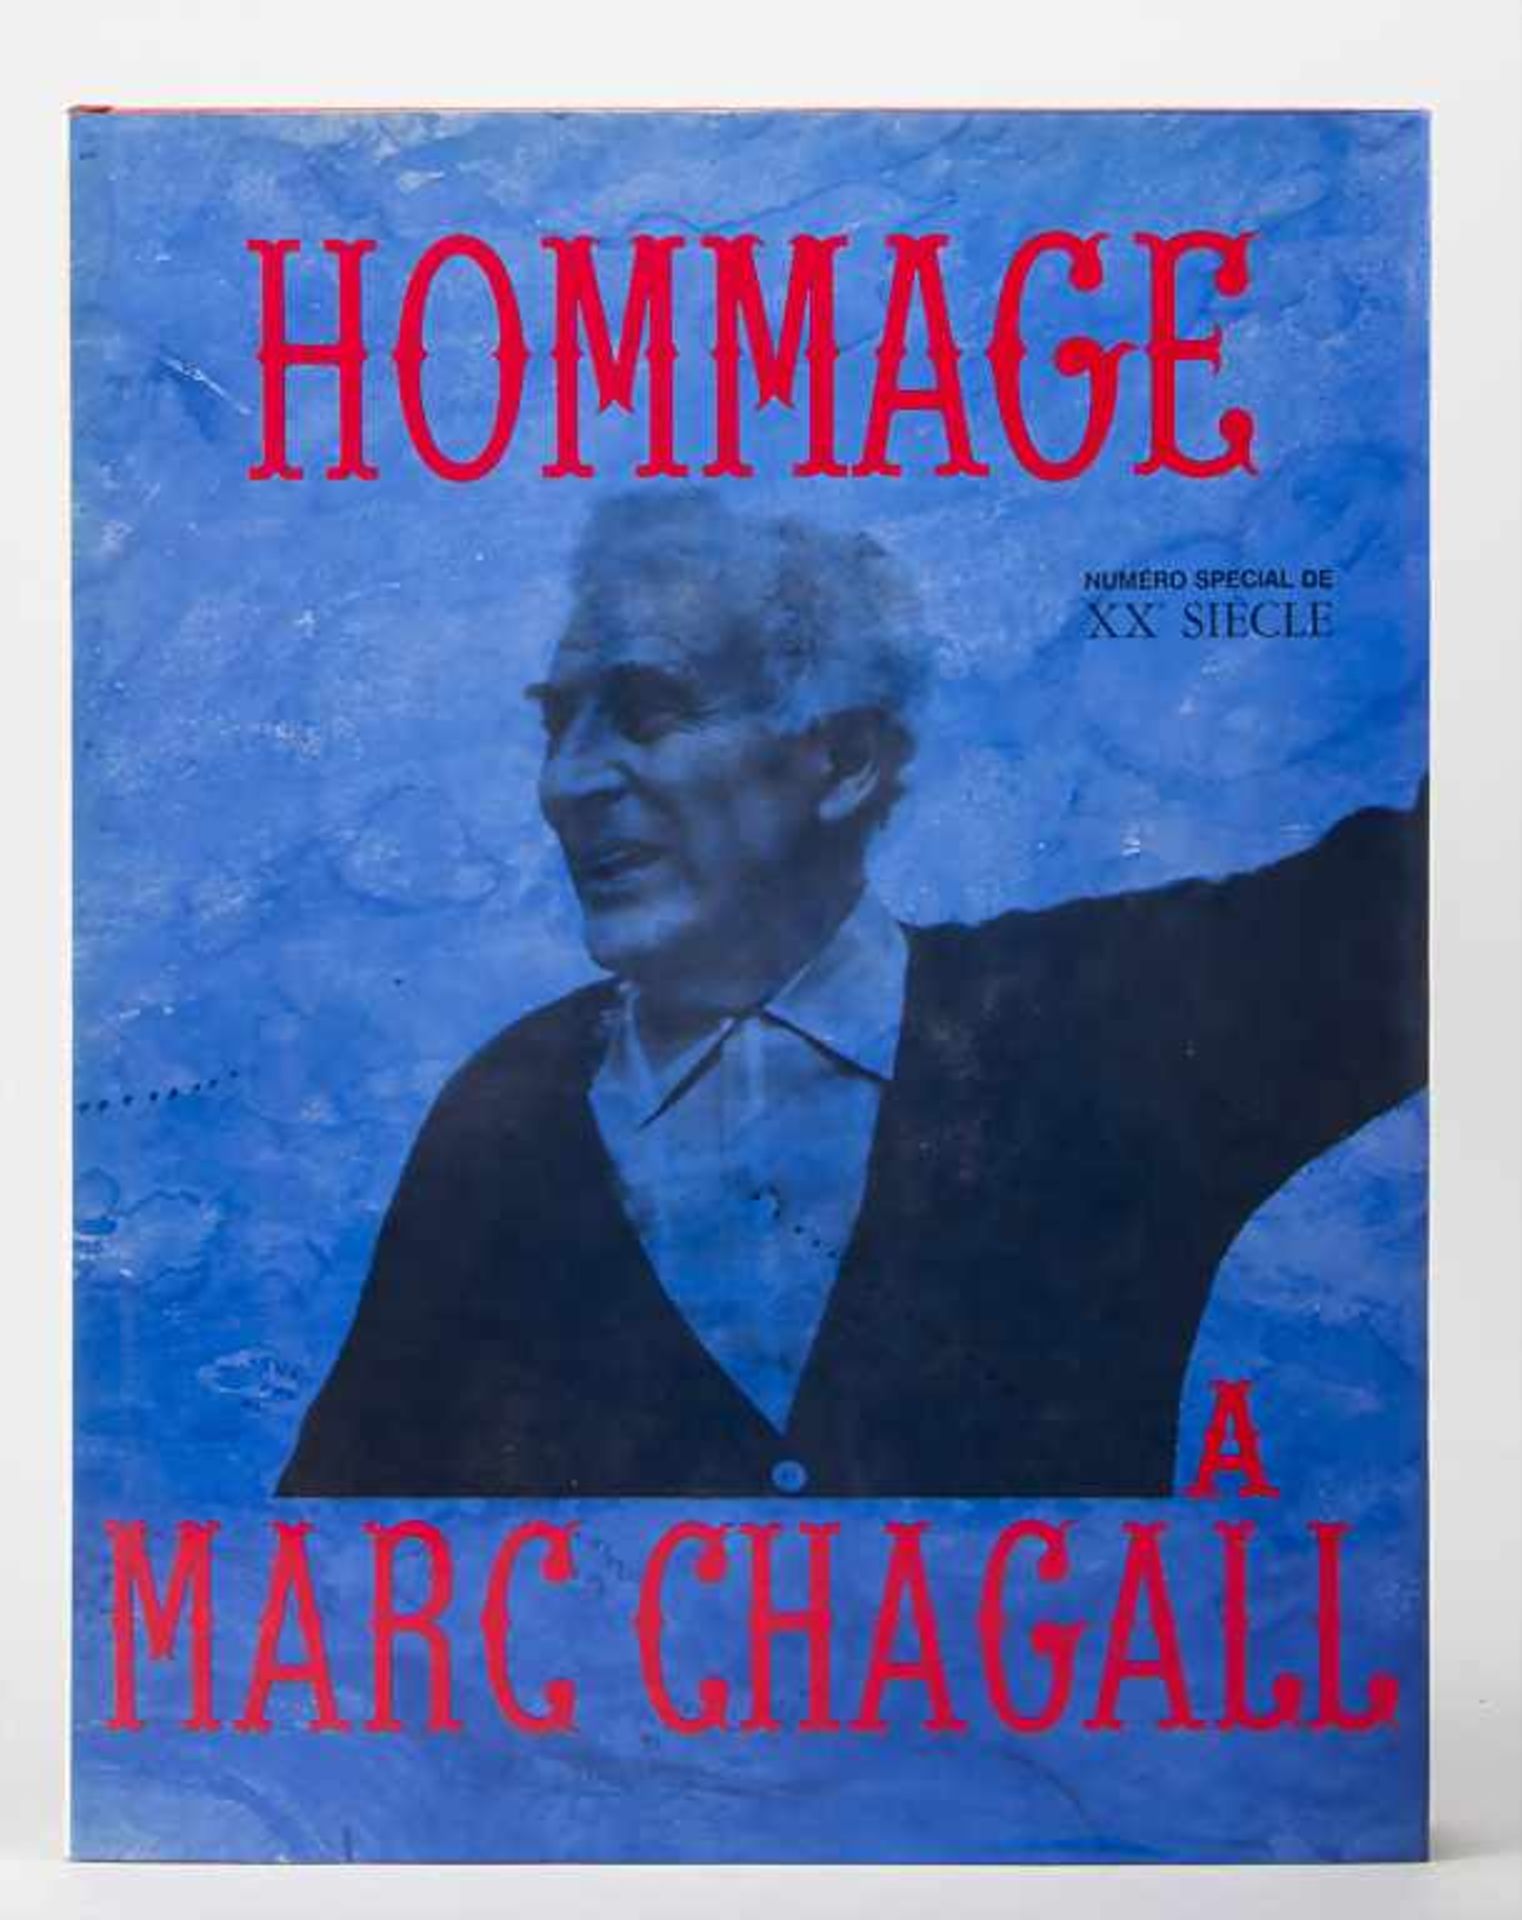 Hommage à Marc Chagall-Numéro special de XX siecle